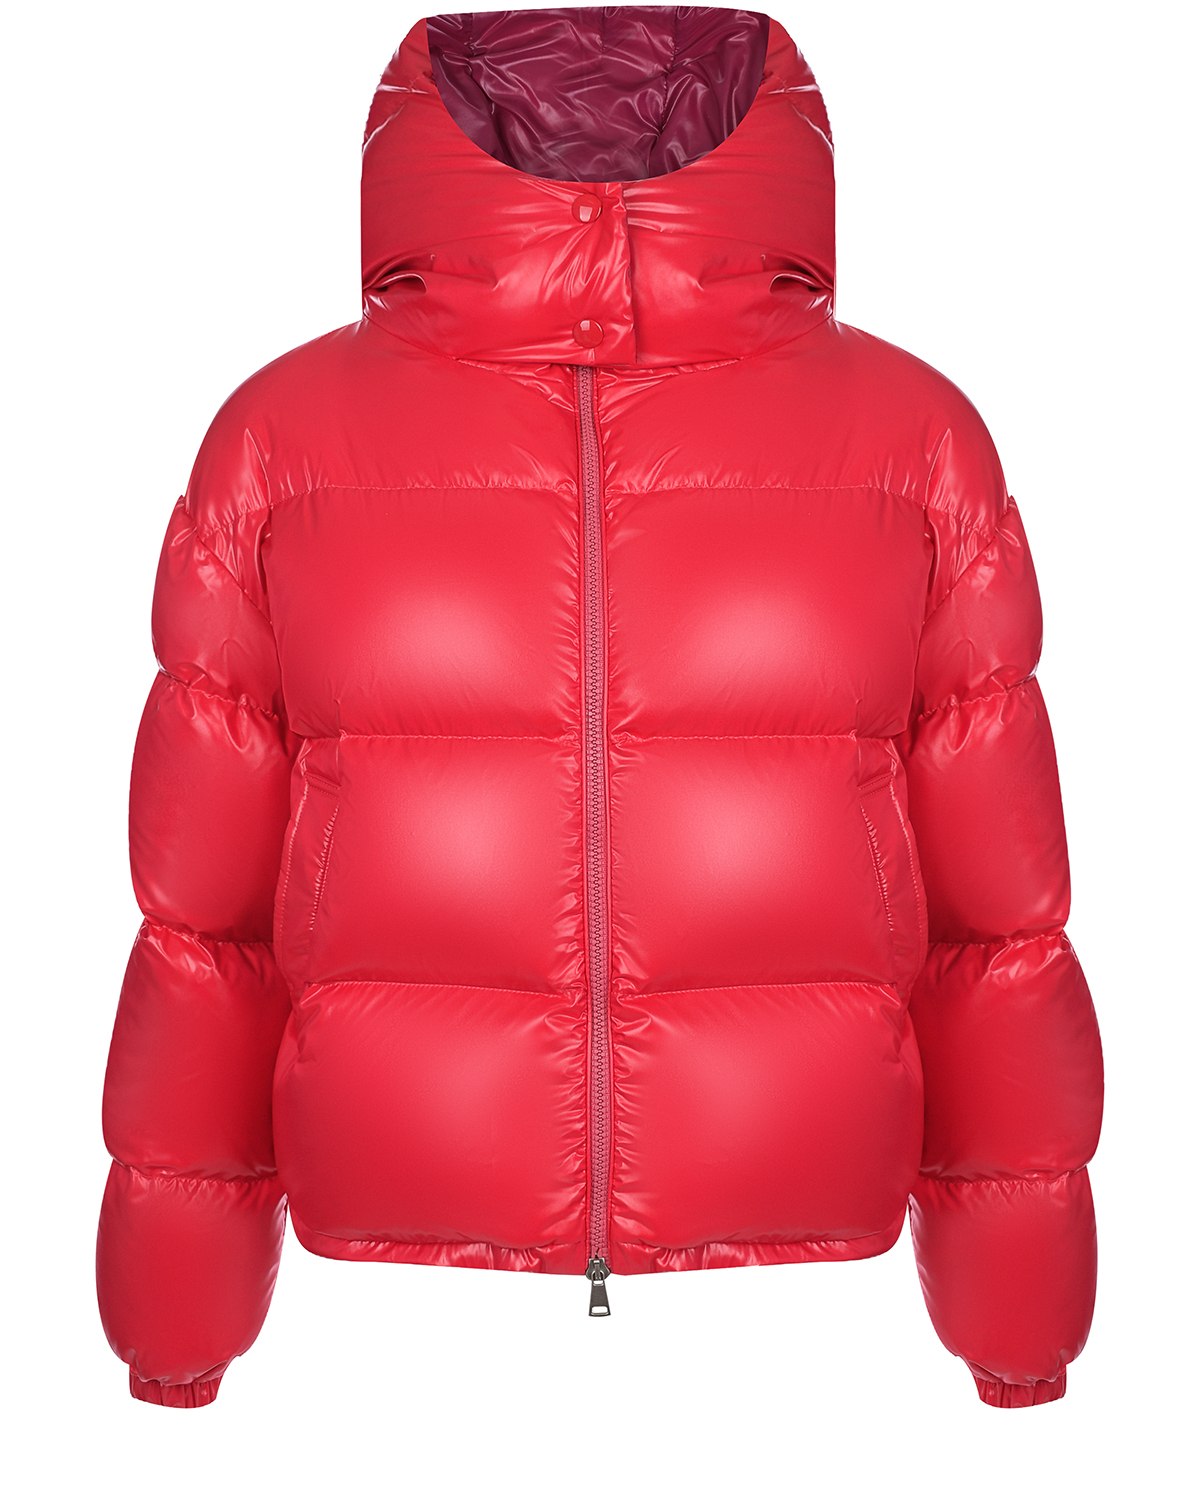 Короткая красная глянцевая куртка Blanchett Goose, размер 40, цвет красный - фото 1